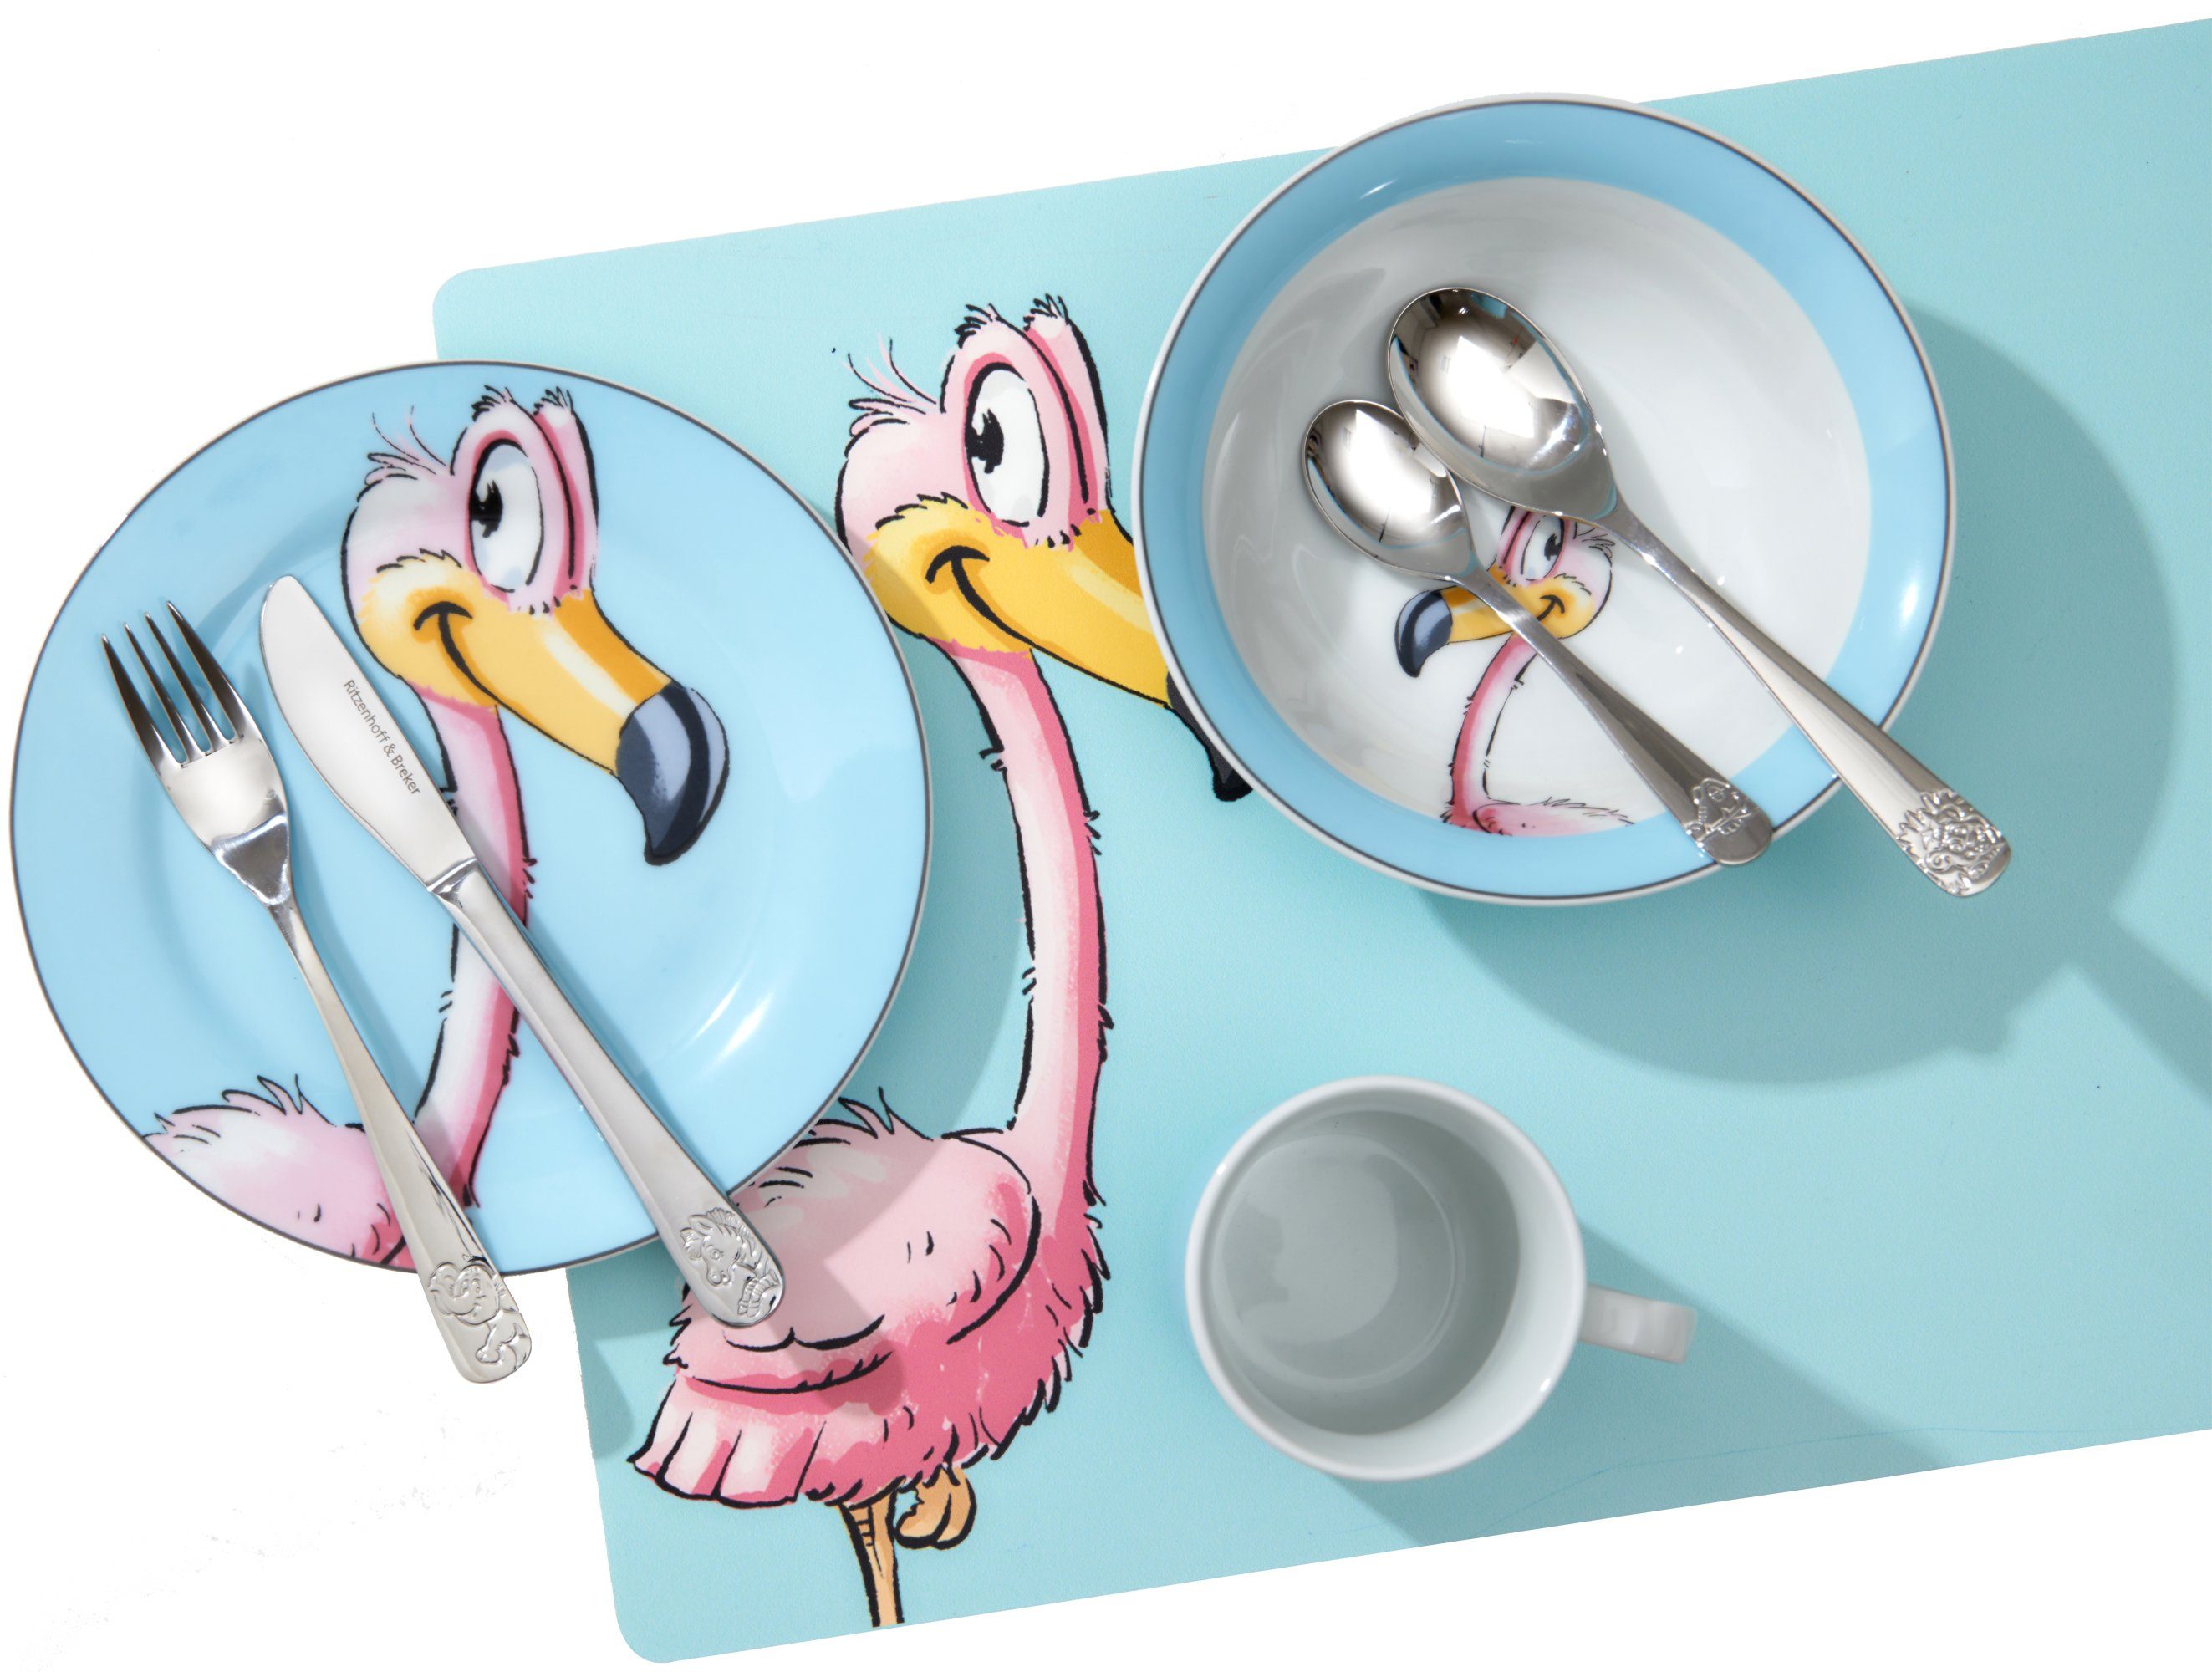 Ritzenhoff & Breker Kindergeschirr-Set Happy 1 1 mit 3 (3-tlg), Personen, Flamingo-Dekor, Person für Zoo, Porzellan, Teile, Flo